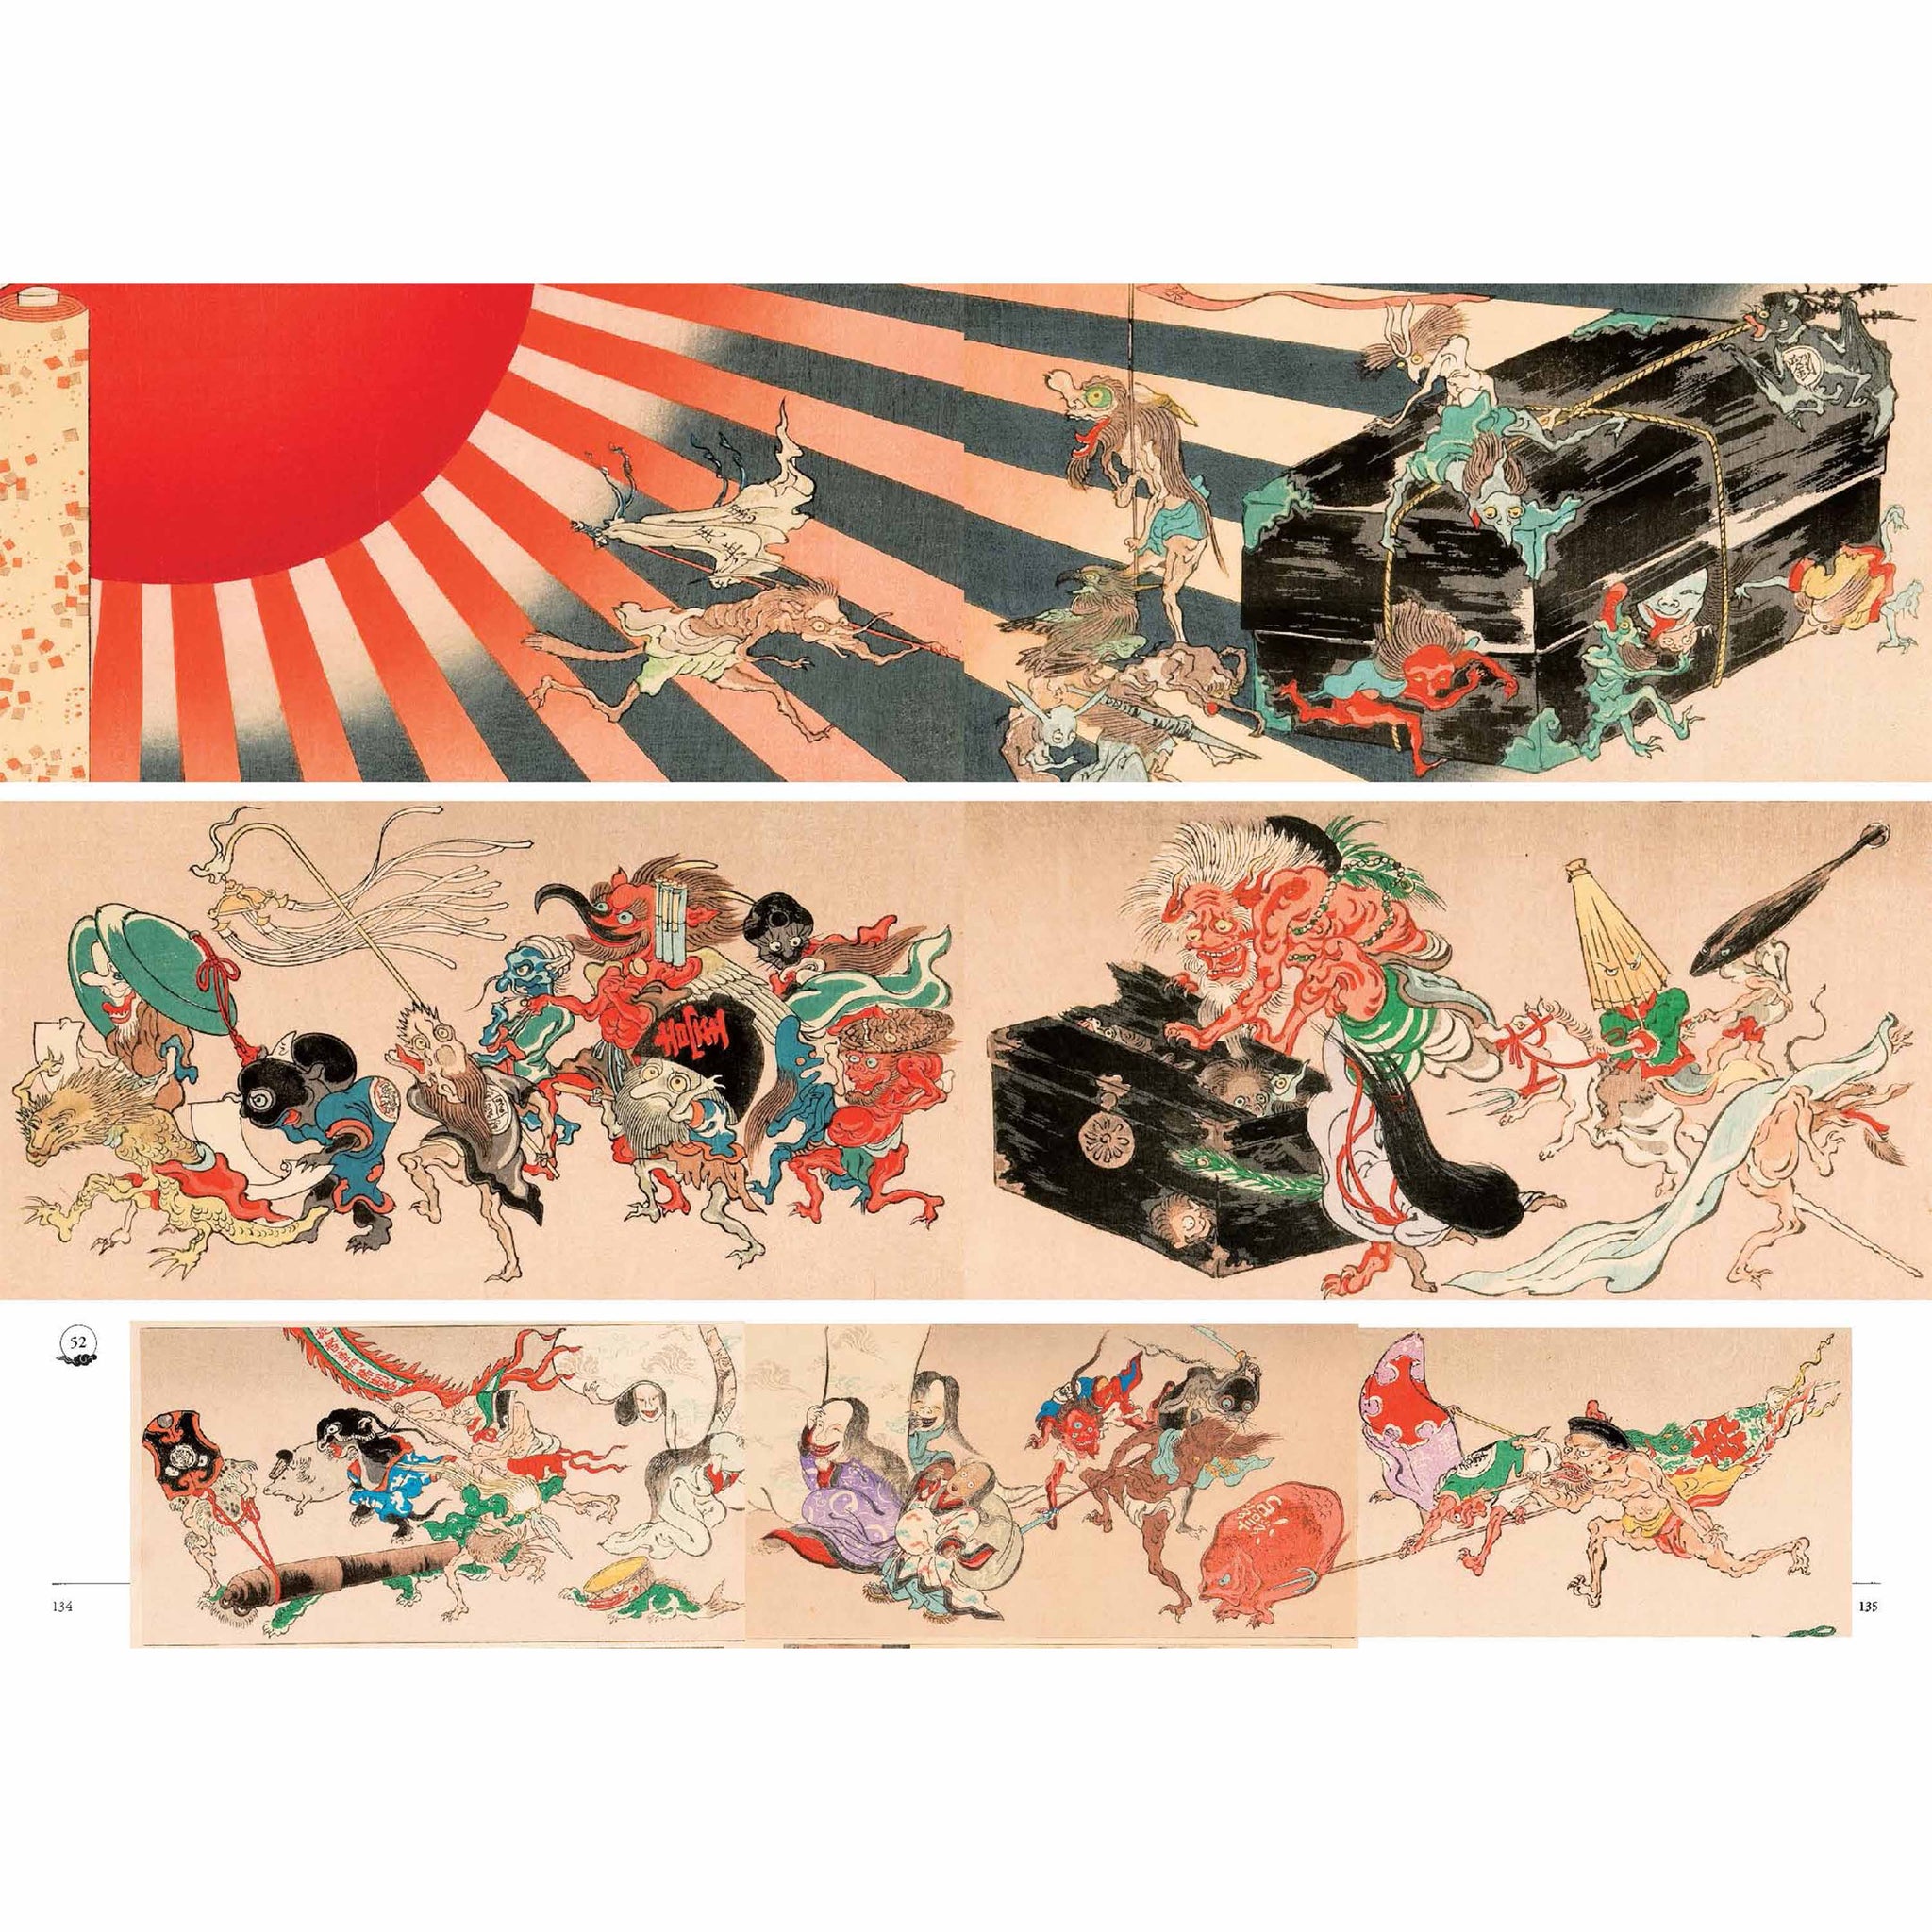 Il museo degli Yōkai - Fantasmi e mostri giapponesi dalla Yumoto Kōichi Collection